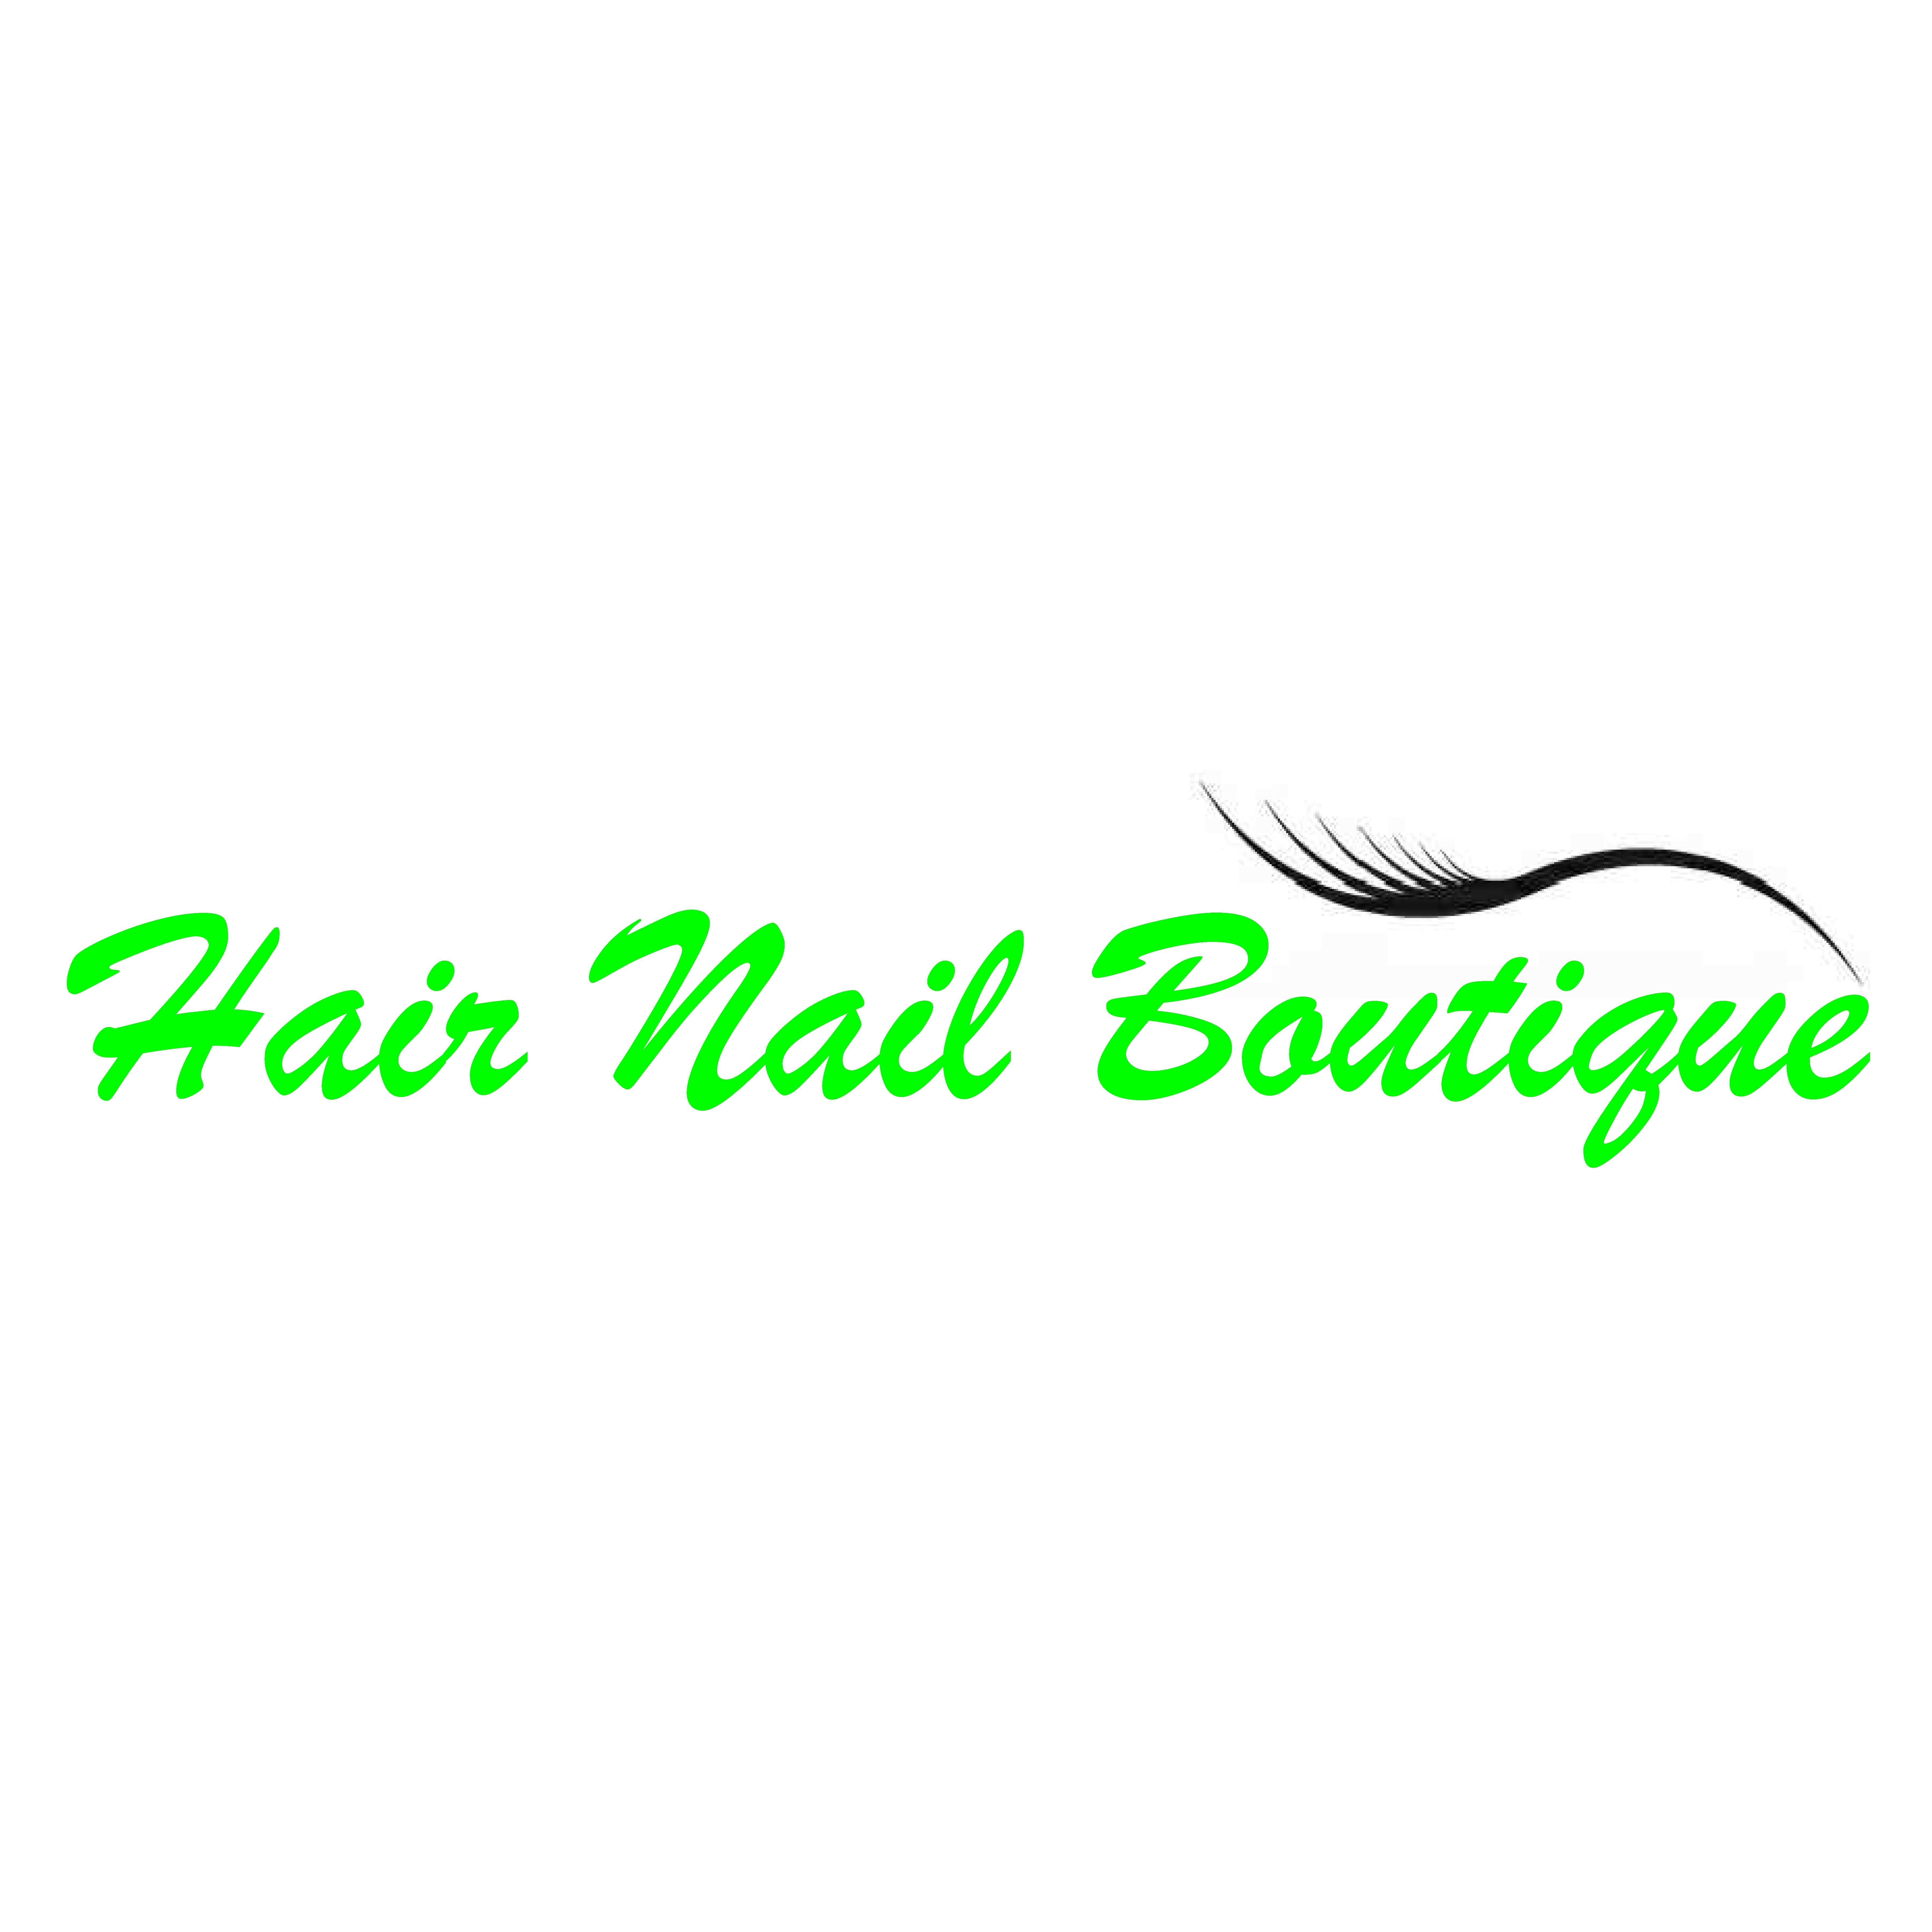 Hair Nail Boutique - Falls Church, VA 22046 - (703)531-0599 | ShowMeLocal.com